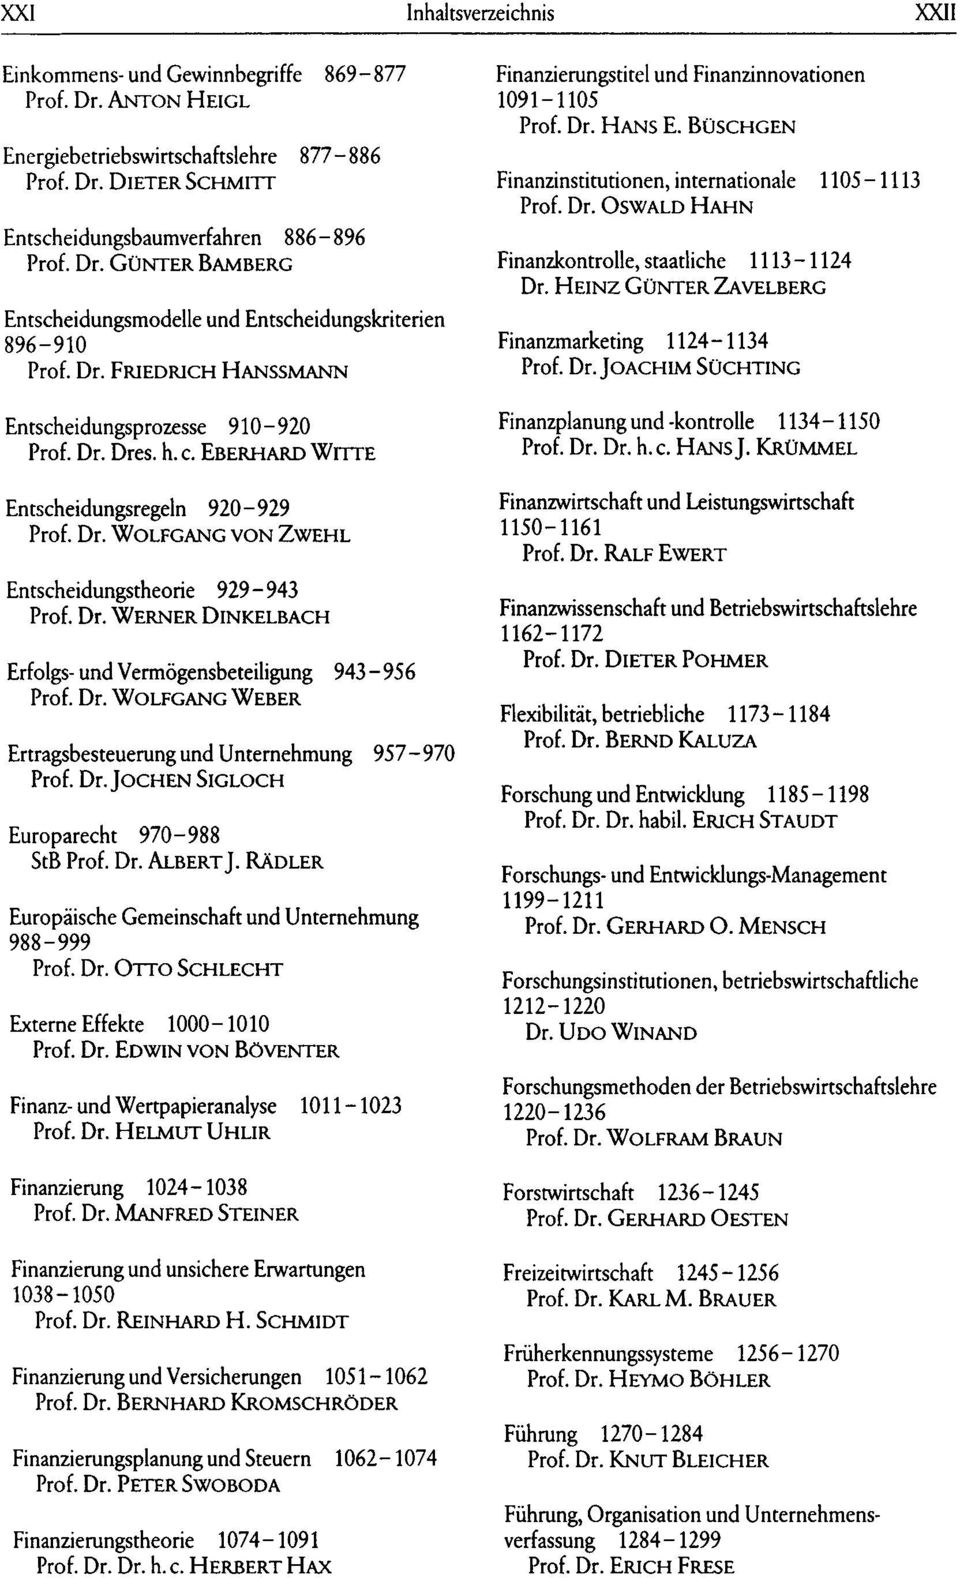 HEINZ GÜNTER ZAVELBERG Finanzmarketing 1124-1134 Prof. Dr. JOACHIM SÜCHTING Entscheidungsprozesse 910-920 Prof. Dr. Dres. h. c. EBERHARD WITTE Finanzplanung und -kontrolle 1134-1150 Prof. Dr. Dr. h. c. HANS J.